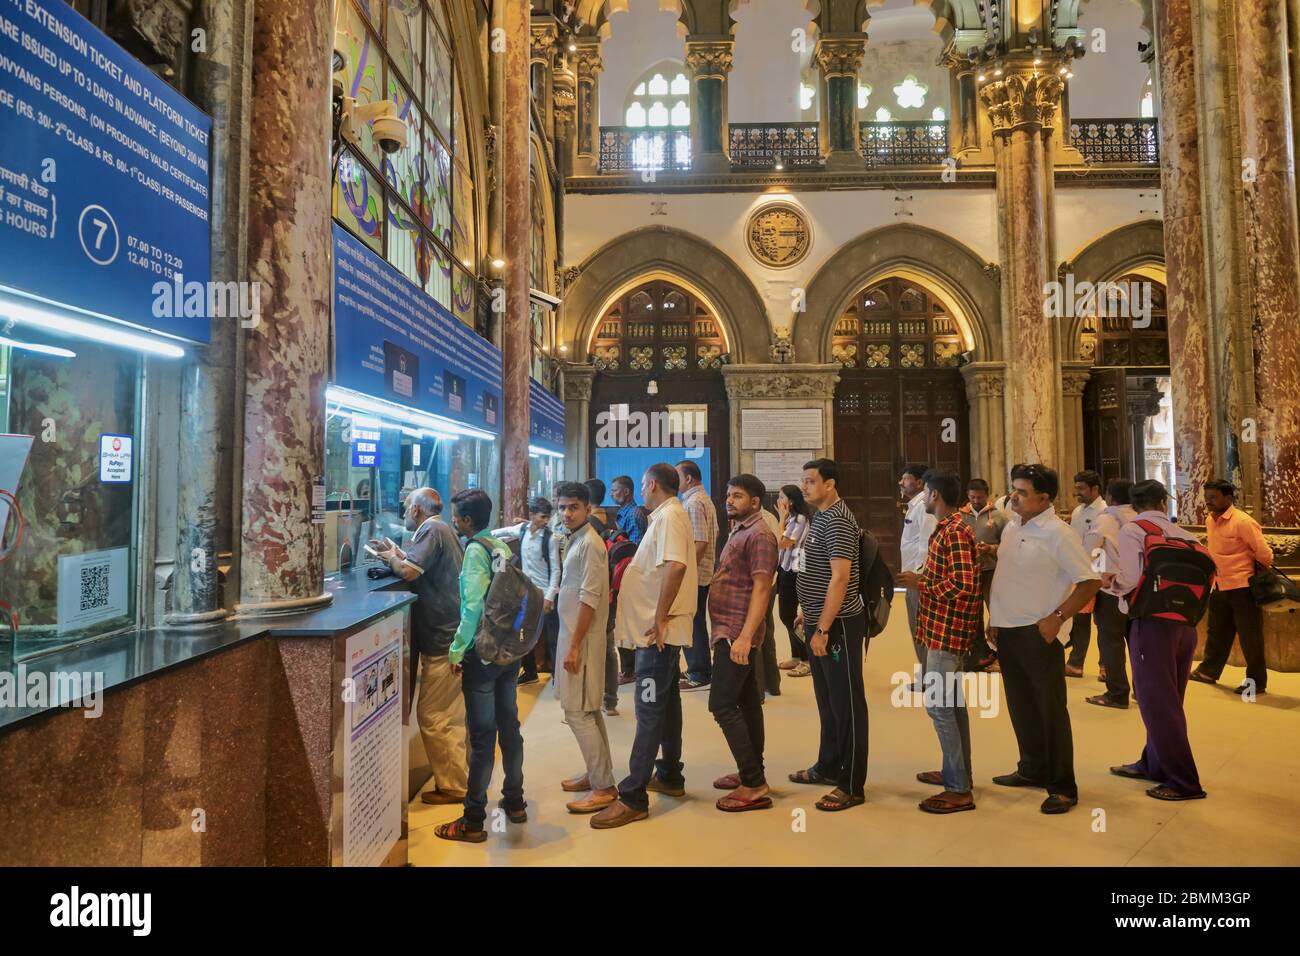 Les navetteurs de Chhatrapati Shivaji Maharaj Terminus, la gare la plus fréquentée de Mumbai, en Inde, et un bâtiment du patrimoine de l'UNESCO, faisant la queue pour les billets Banque D'Images